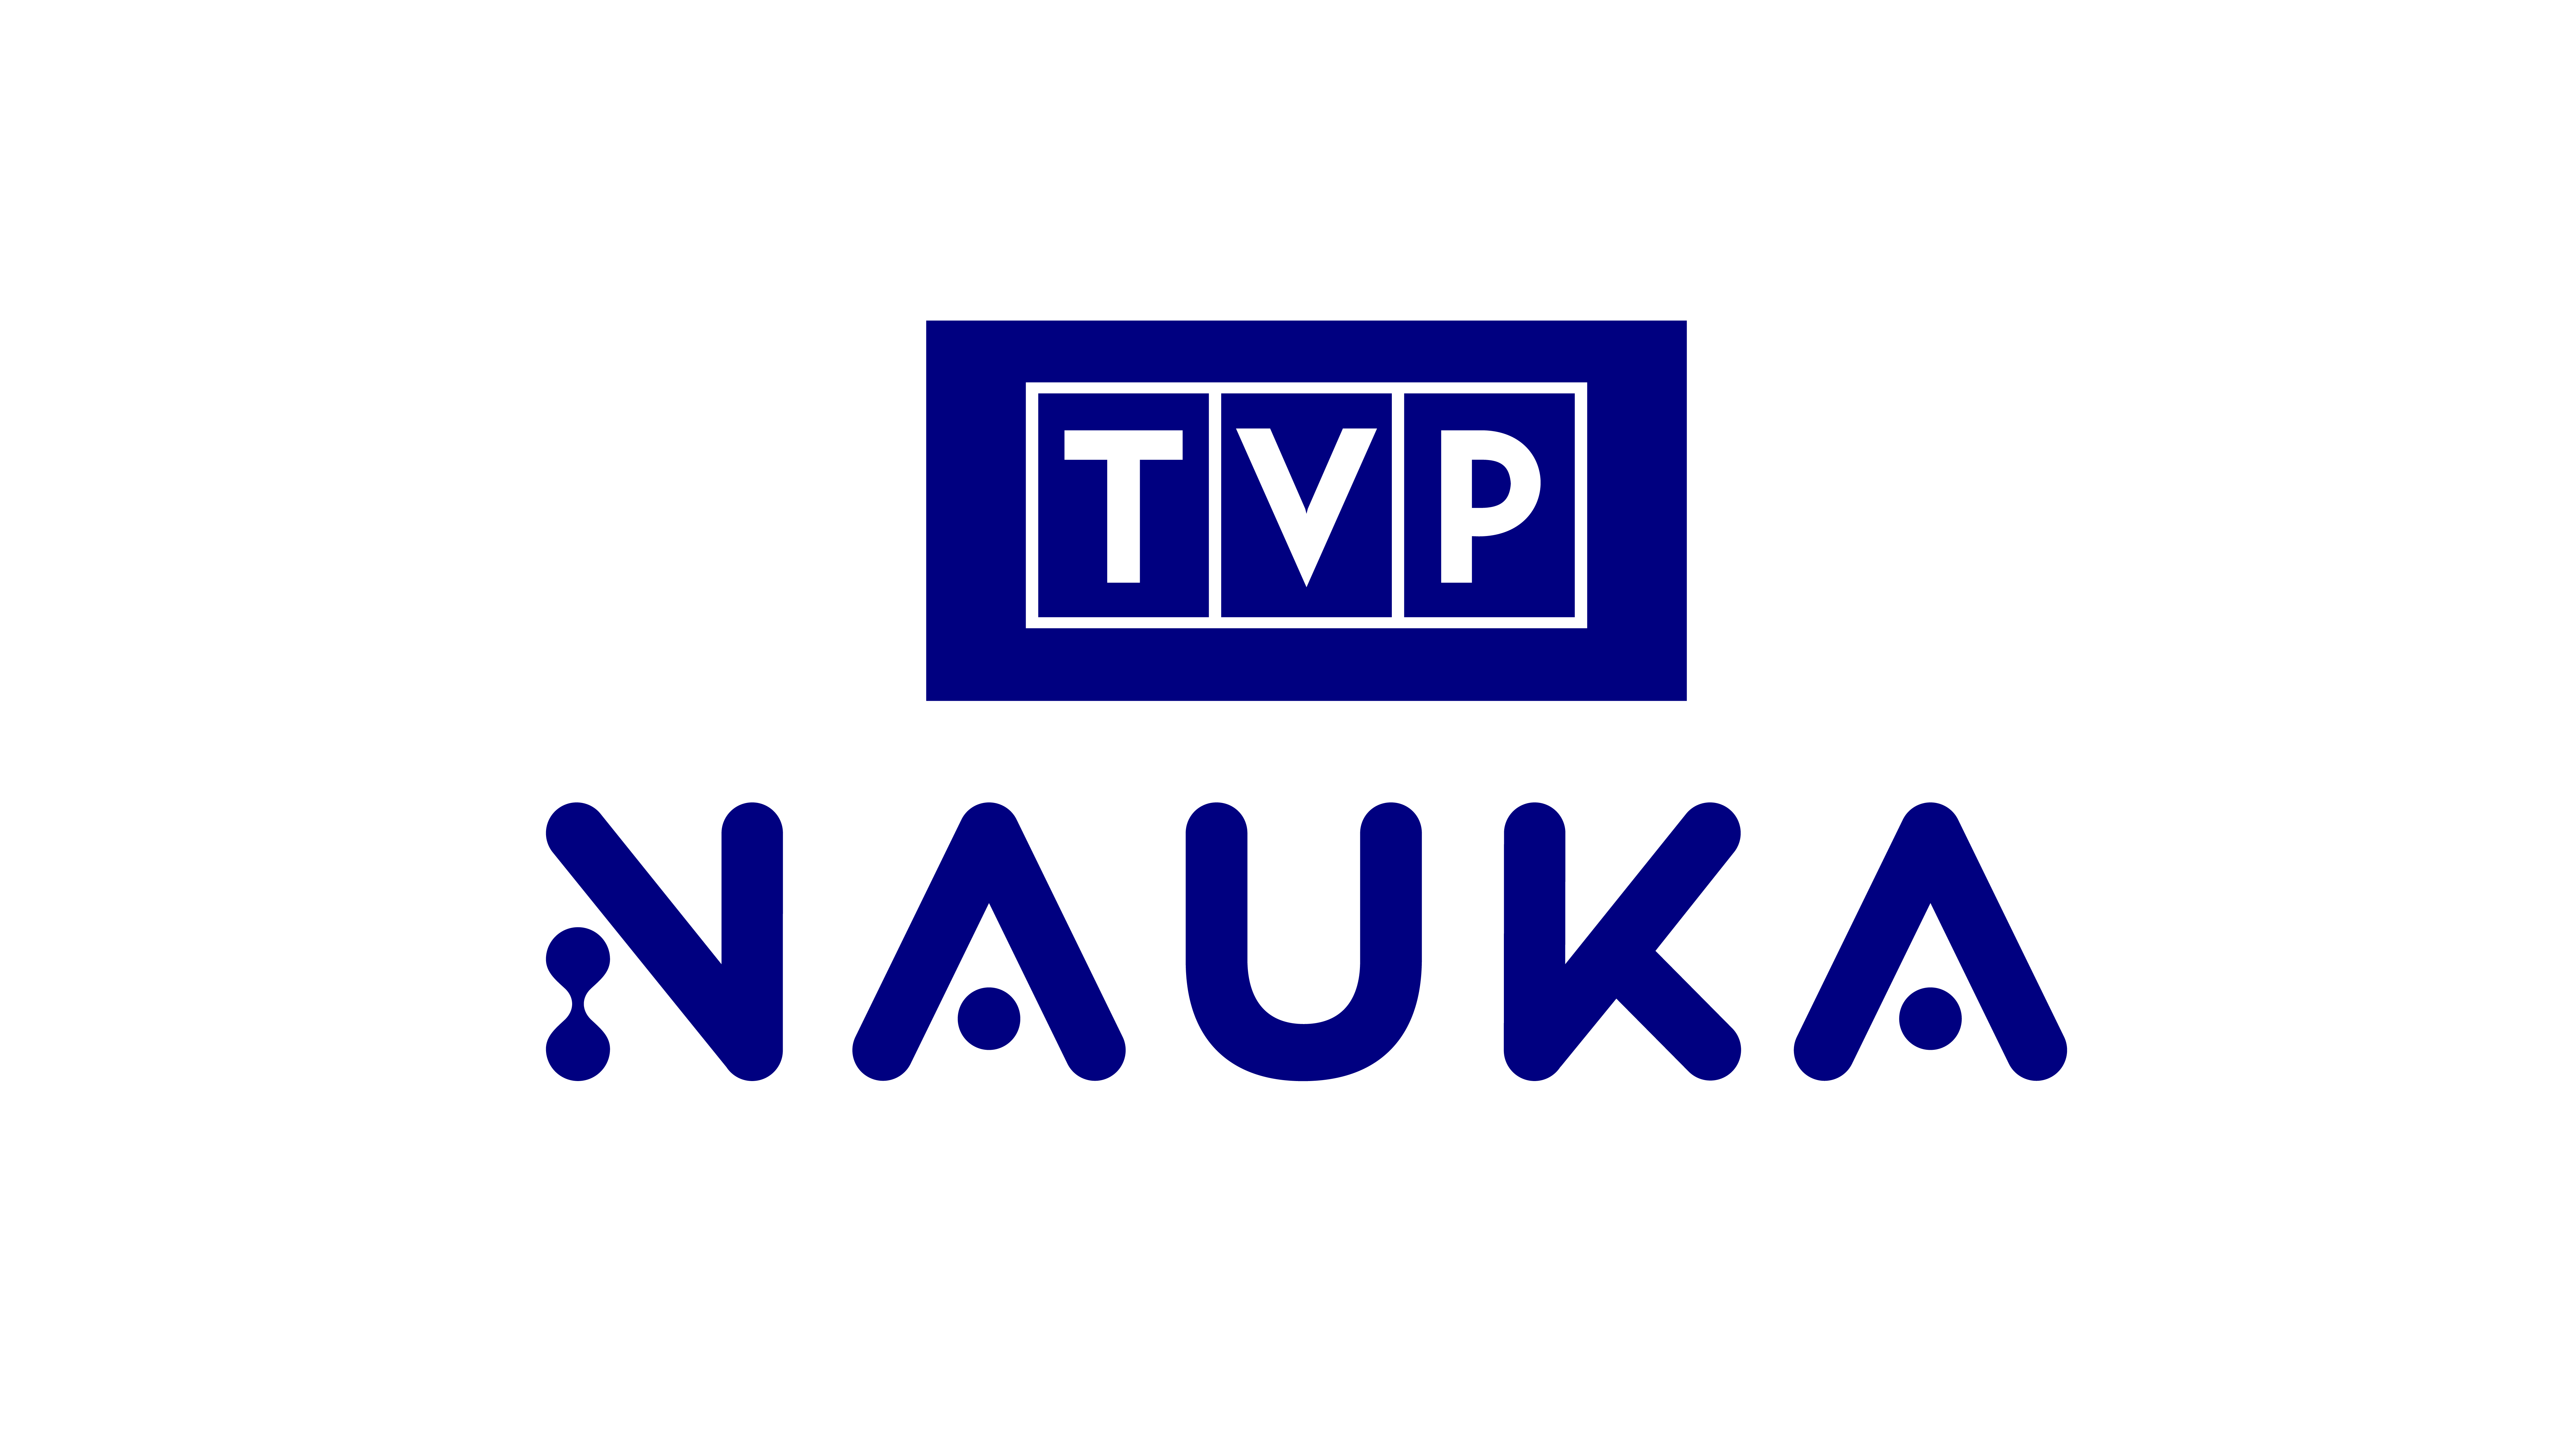 TVP Nauka